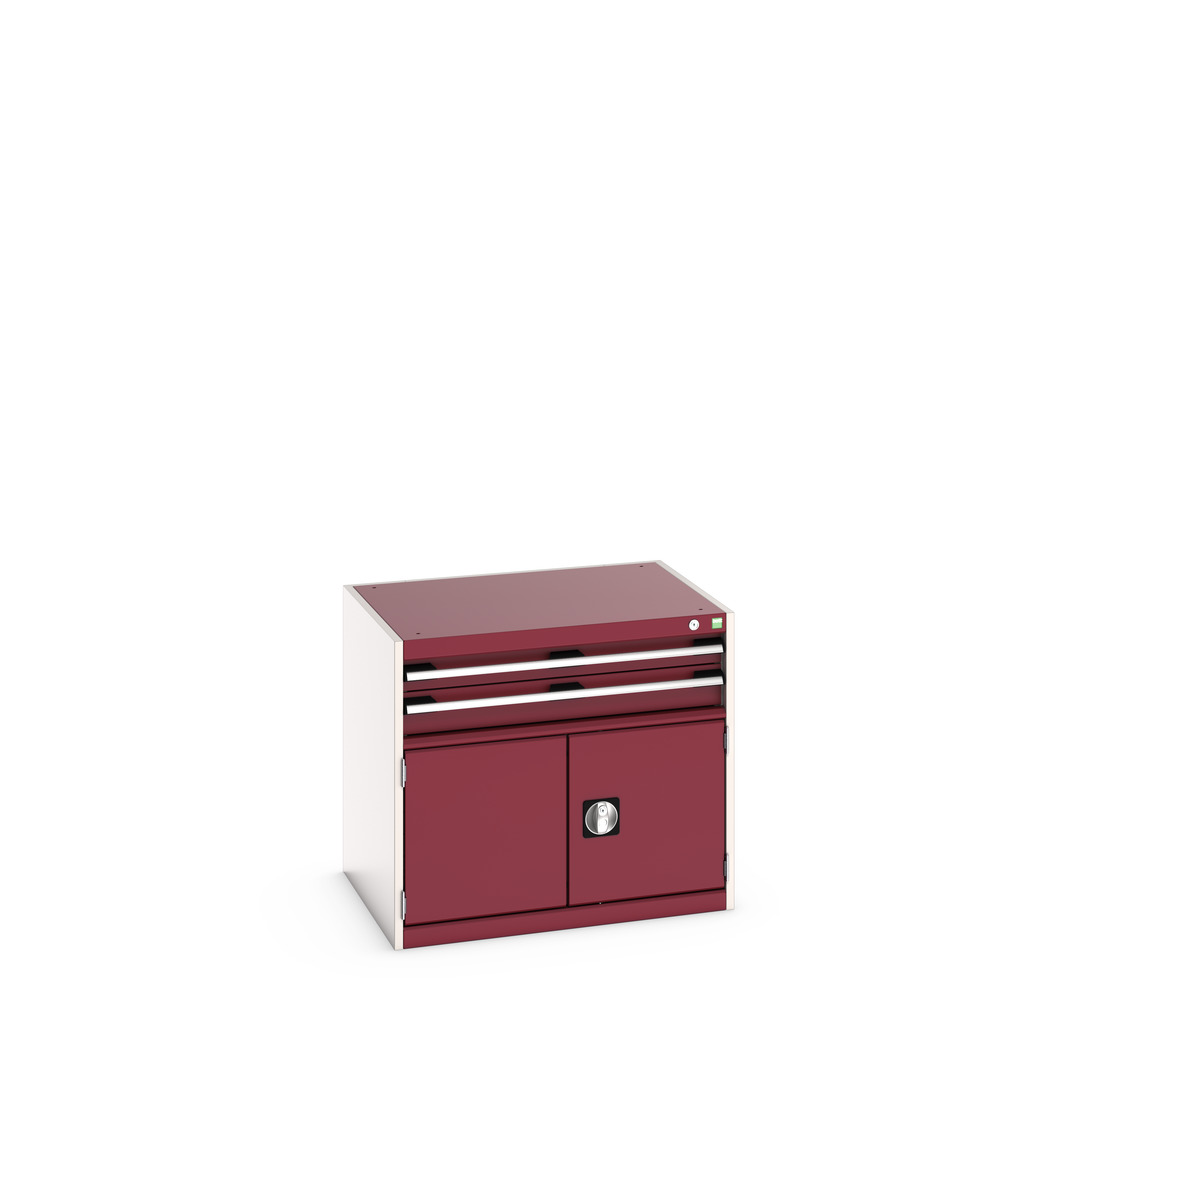 40020012.24V - cubio drawer-door cabinet